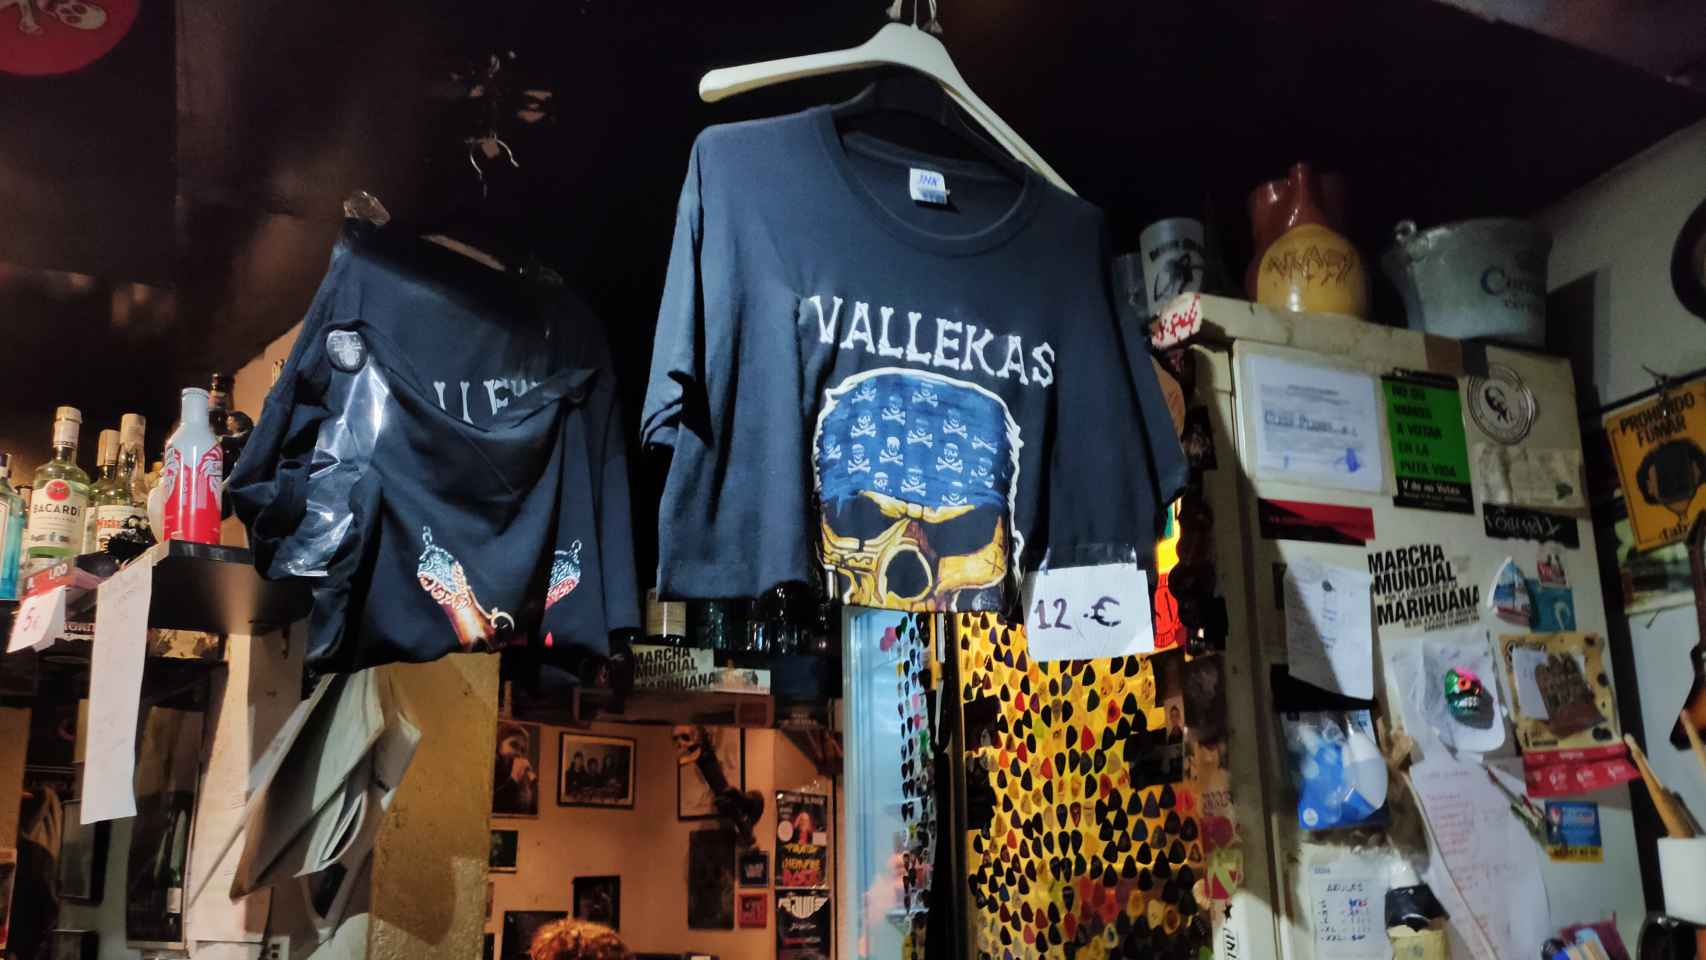 Camiseta de 'Vallekas' a la venta tras la barra del local. Al fondo, cientos de púas de guitarra.